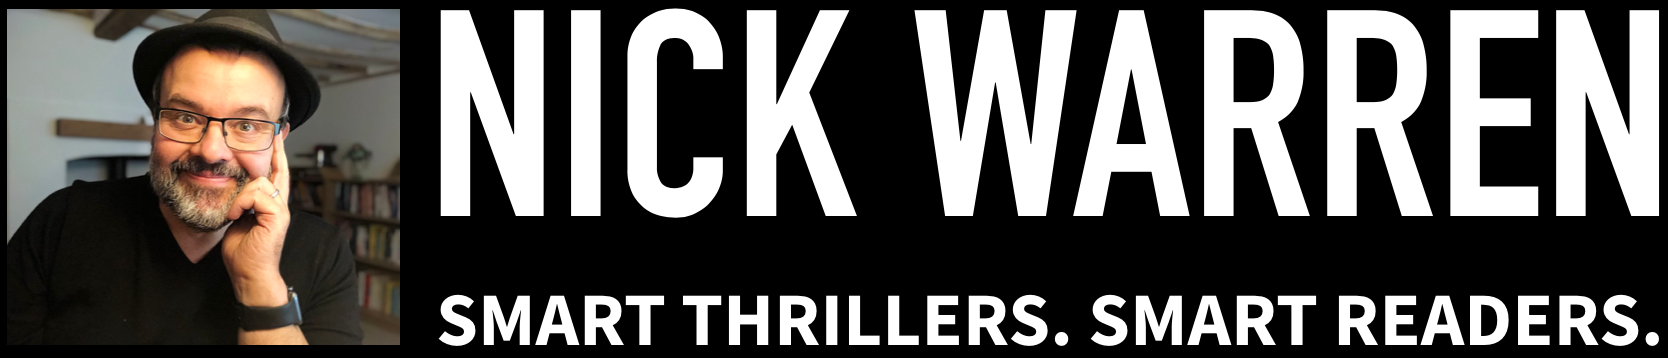 Nick Warren - Thrillers That Mean Business